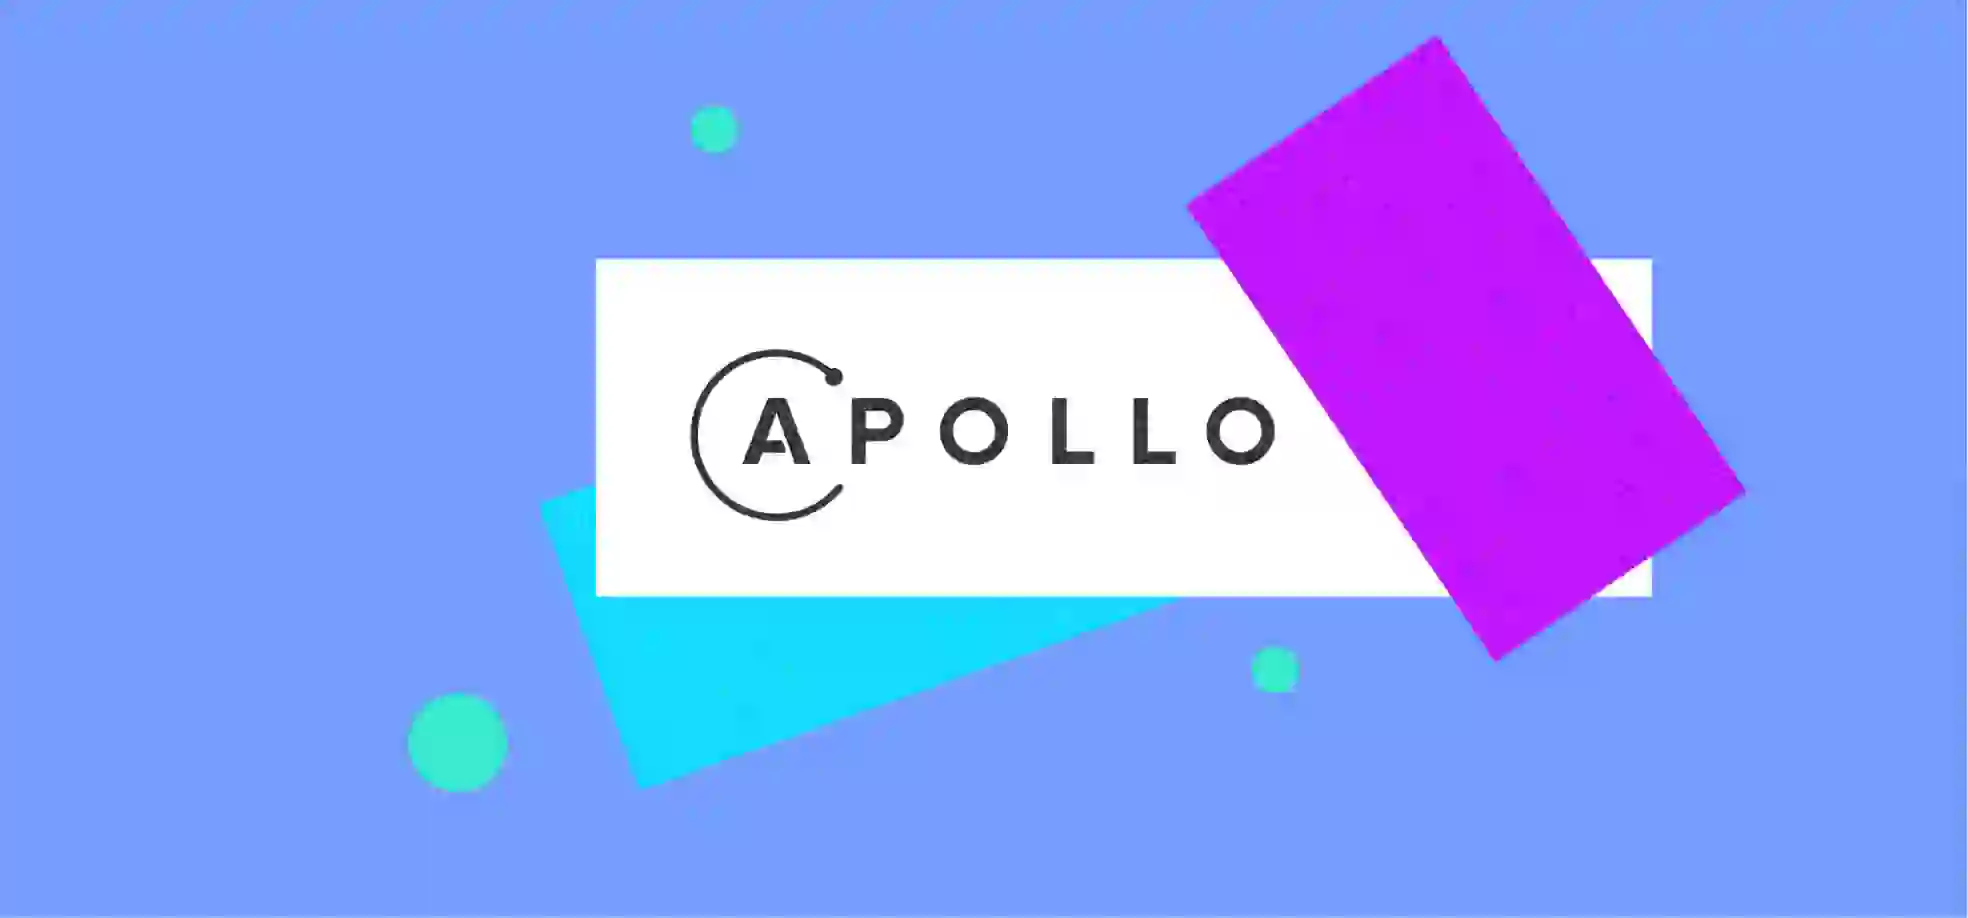 Apollo logo on a blue background